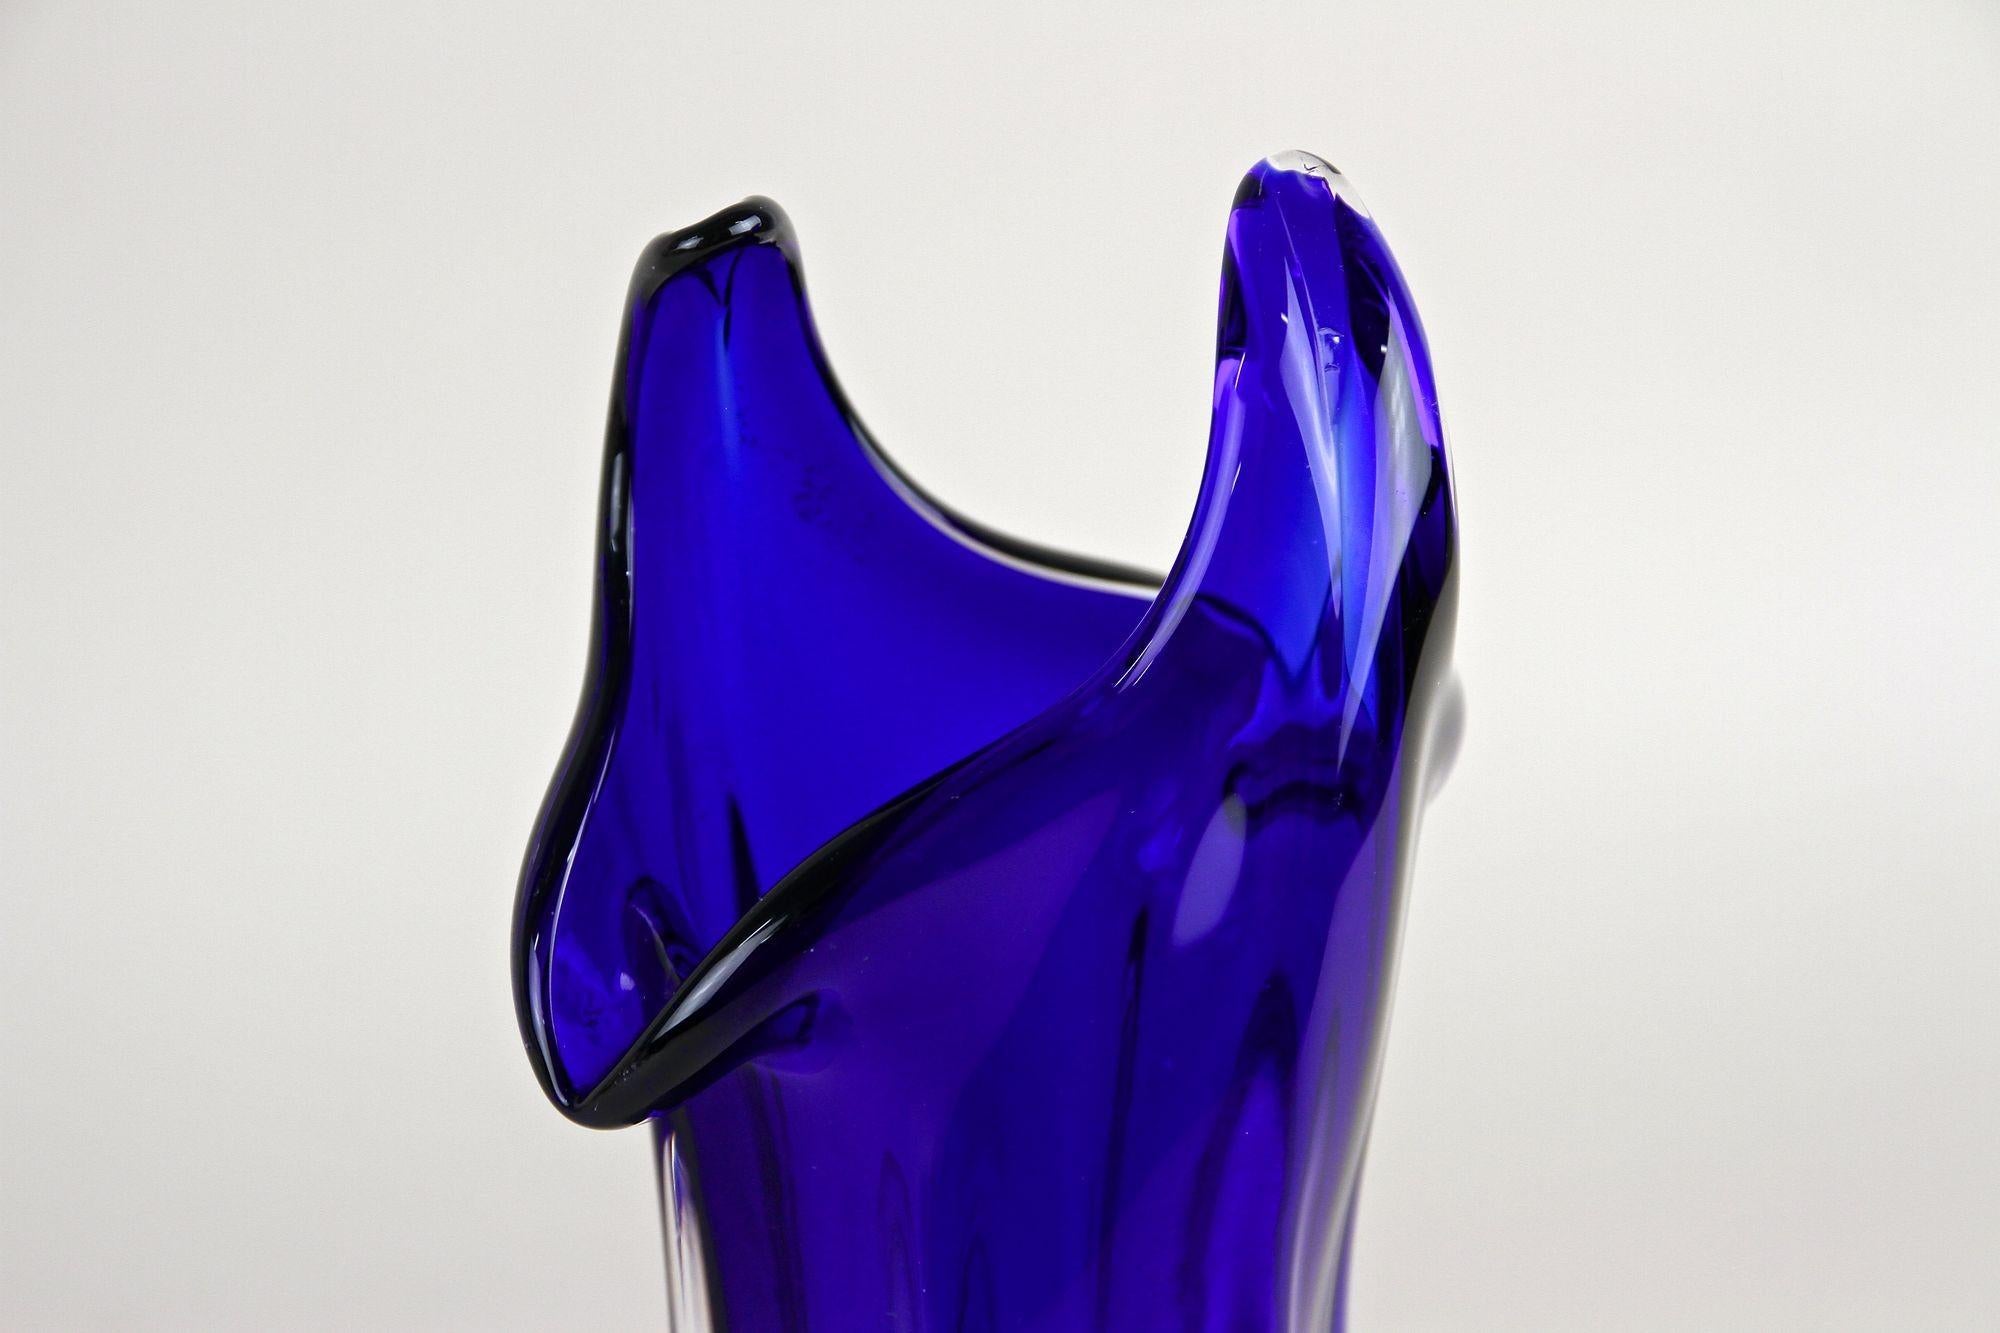 Fantastische dunkelblaue moderne Murano-Glasvase, handgefertigt in den renommierten Werkstätten von Murano in Italien um 1970. Dieses Beispiel einer Murano-Vase aus dem späten 20. Jahrhundert zeigt am besten, wie kreativ der Künstler bereits in den